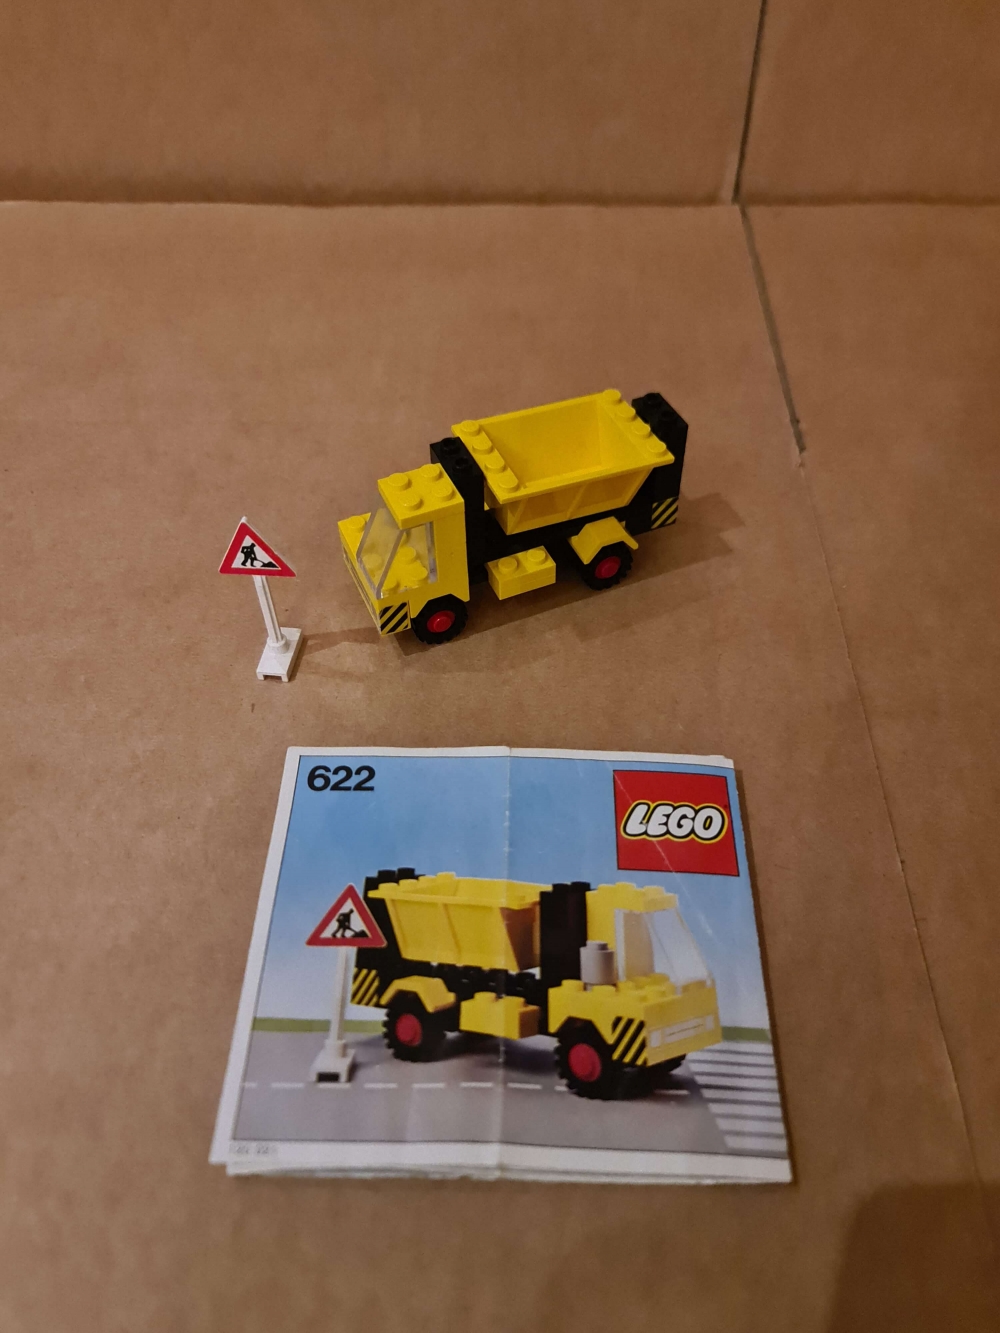 Sett 622 fra Lego Classic Town serien.
Flott sett.  Ingen misfarging. Kun originale deler fra settet.
100% komplett med manual. Klistremerker er på og pene.